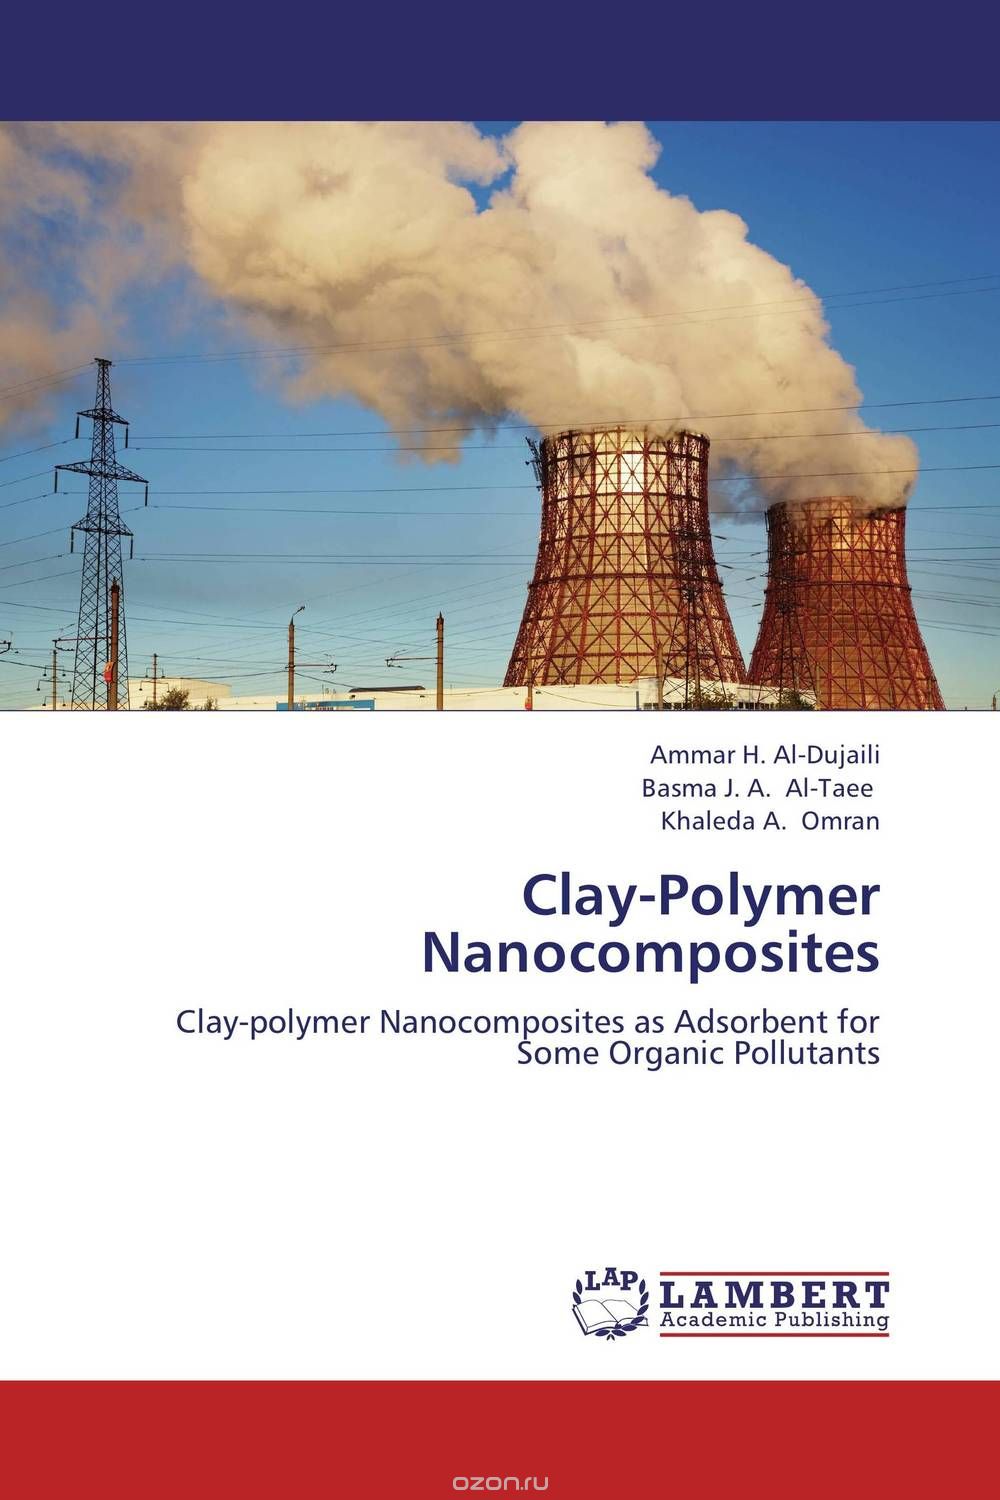 Скачать книгу "Clay-Polymer Nanocomposites"